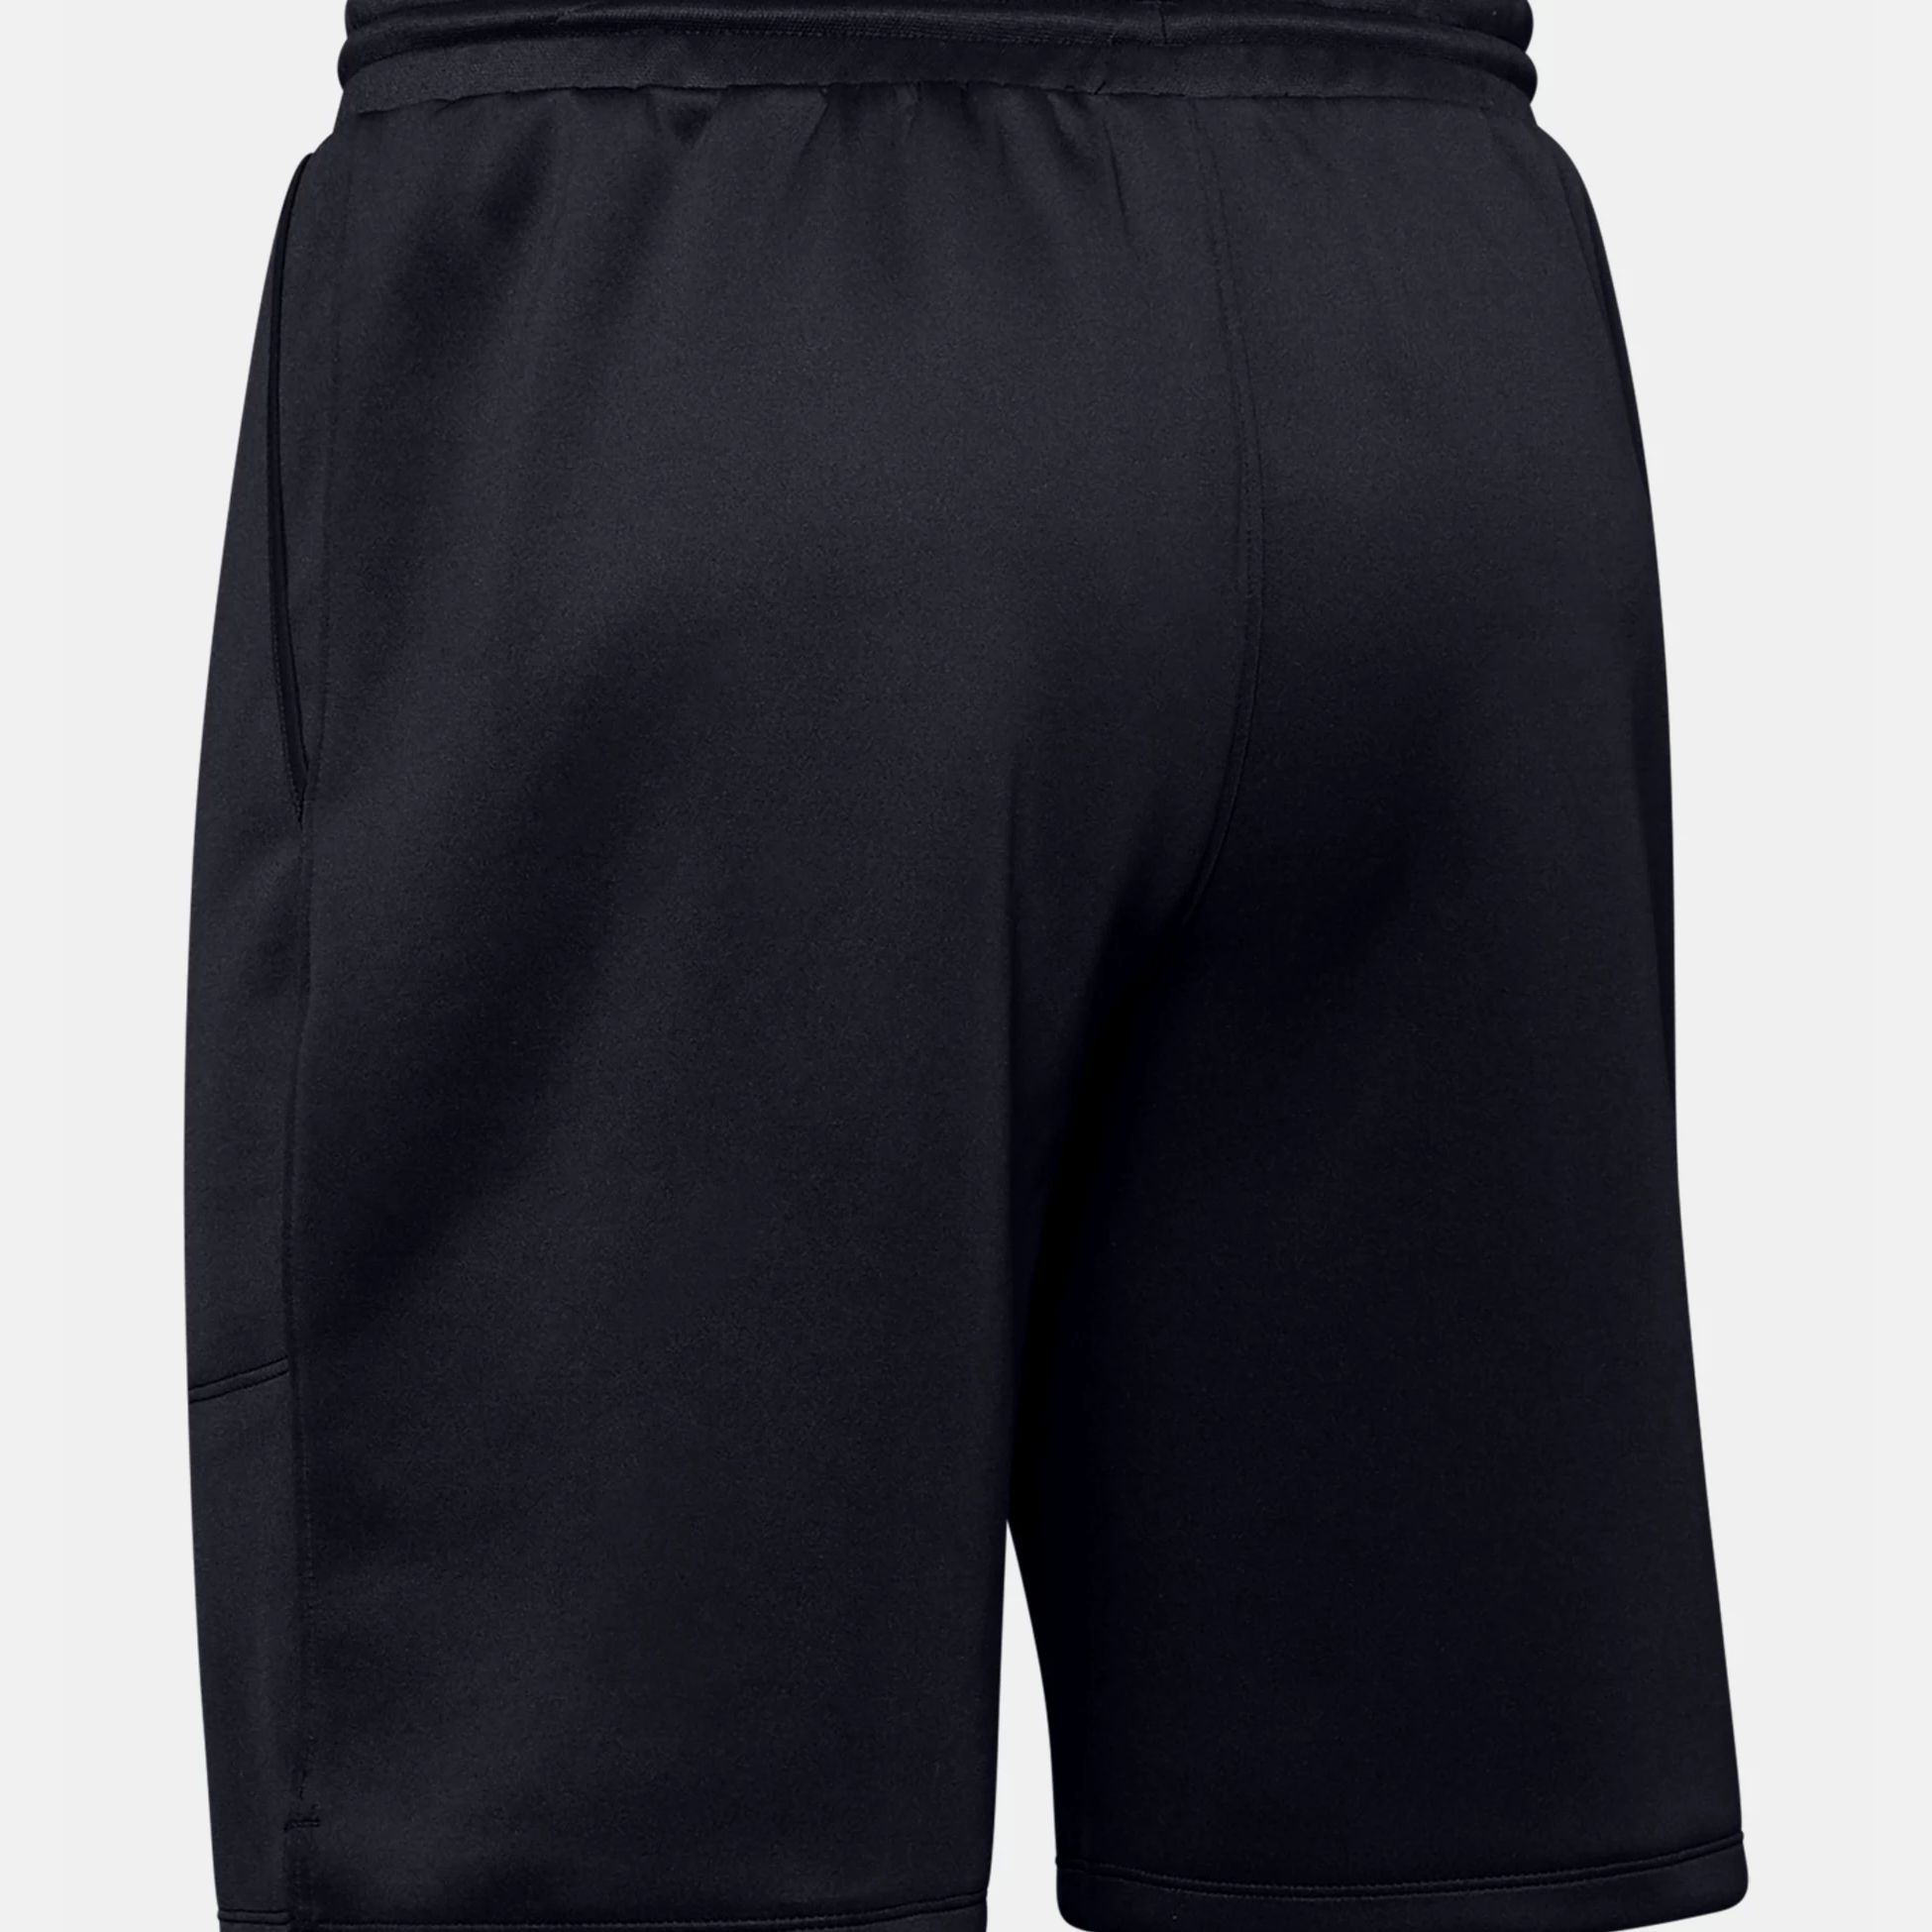 Shorts -  under armour UA MK-1 Warm-Up Shorts 574